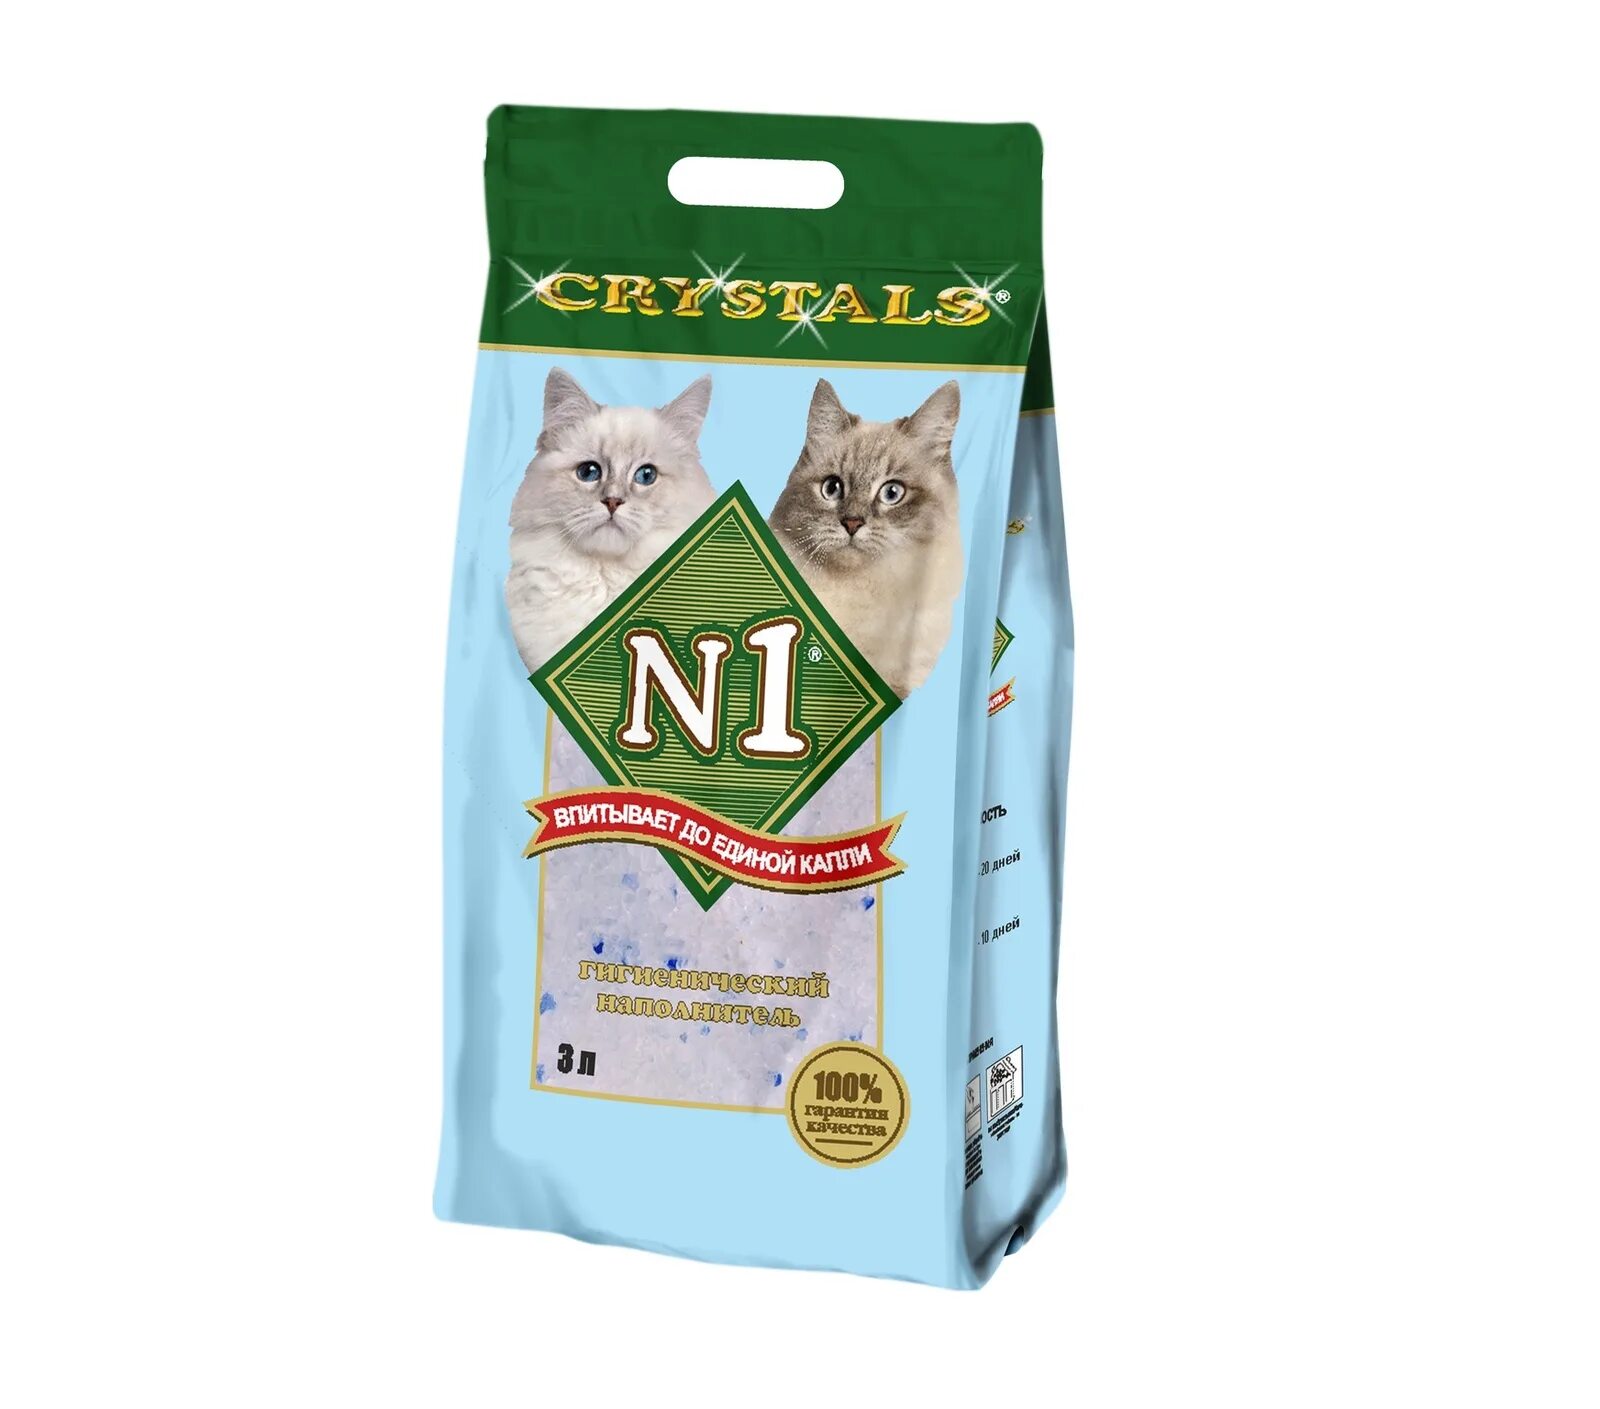 8 в 1 для кошек. N1 Crystals наполнитель силикагелевый 5л. N1 - силикагелевый наполнитель. Наполнитель для кошачьего туалета силикагель n1. Кошачий наполнитель Кристалл 1 12.5 л.